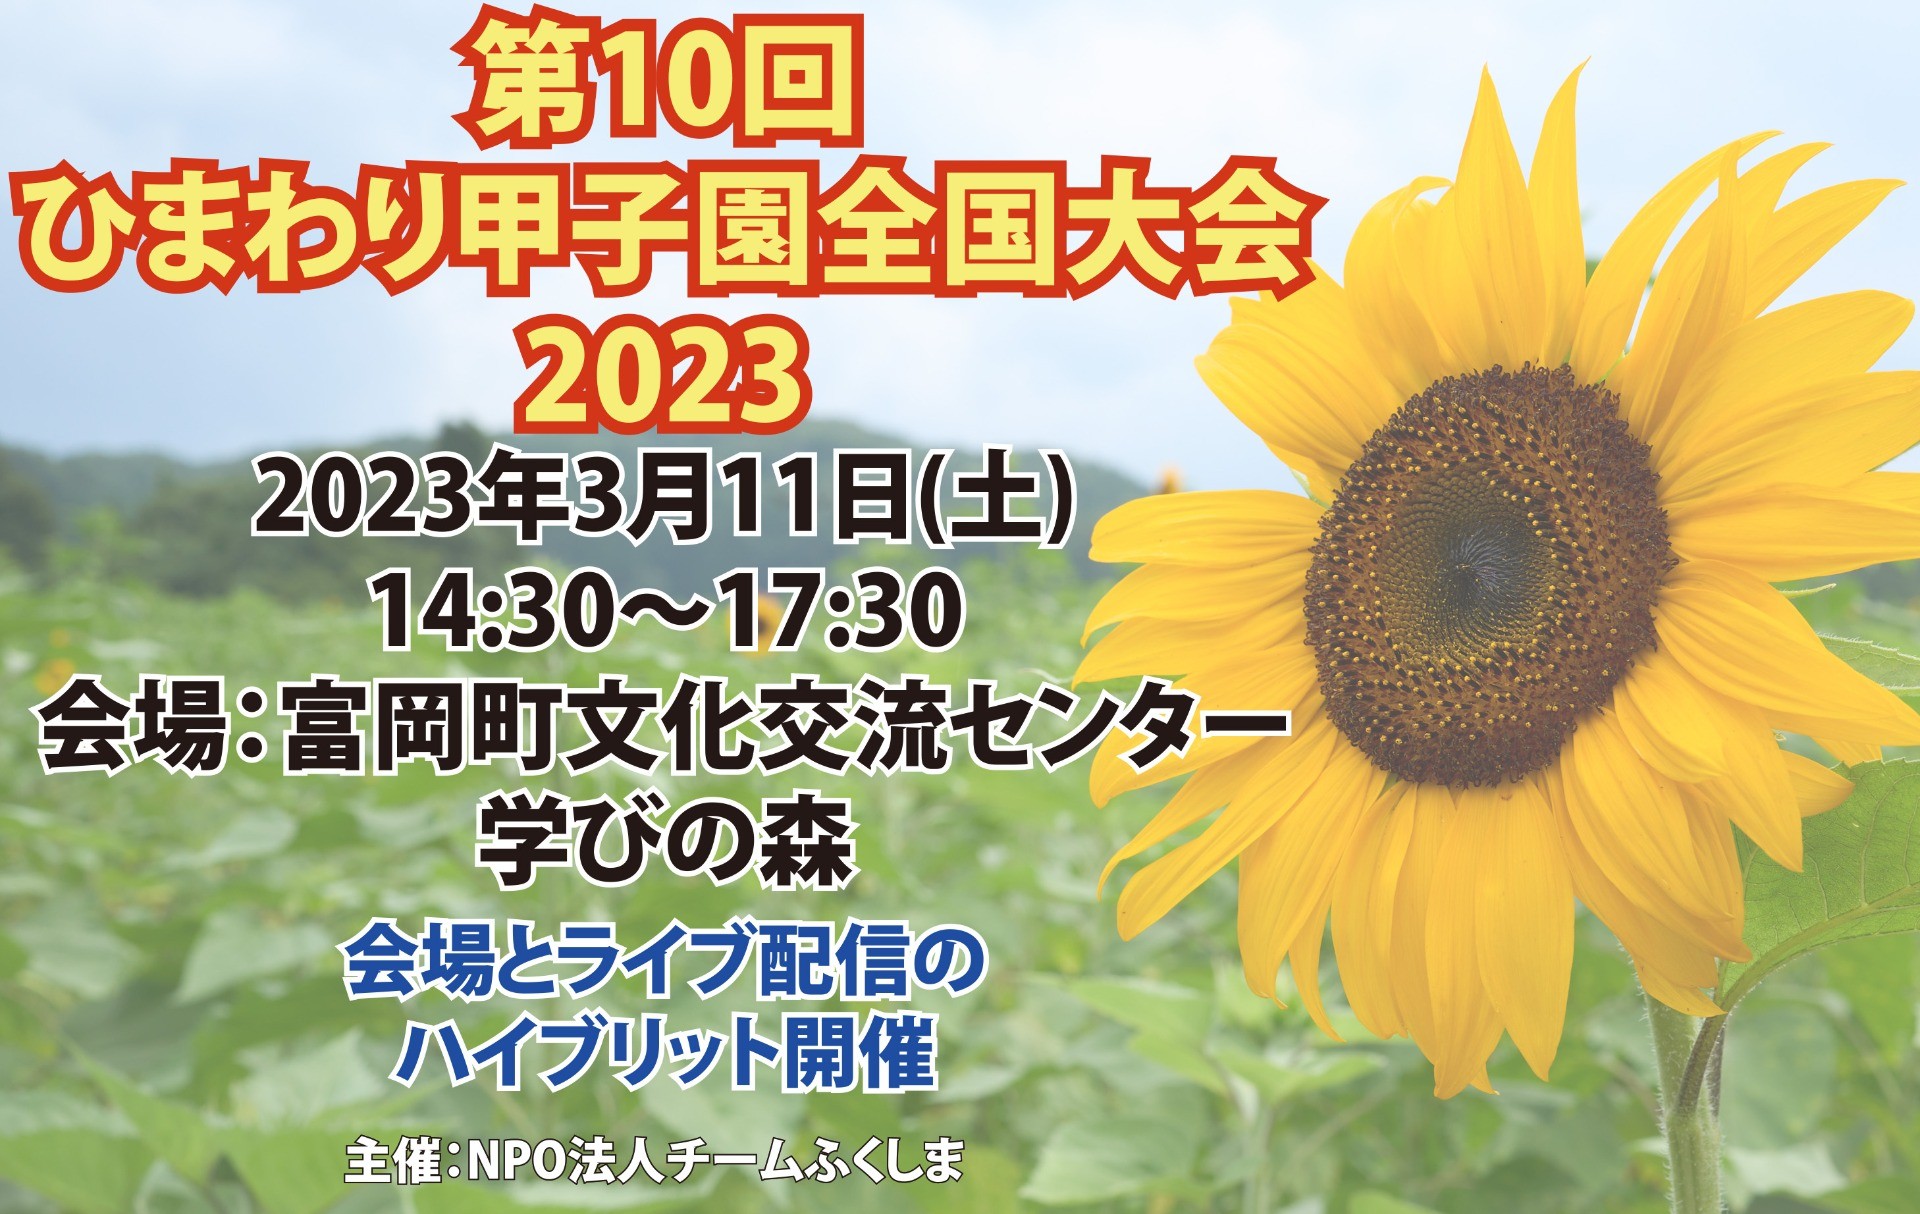 【イベント情報】第10回ひまわり甲子園全国大会 2023　開催のご案内